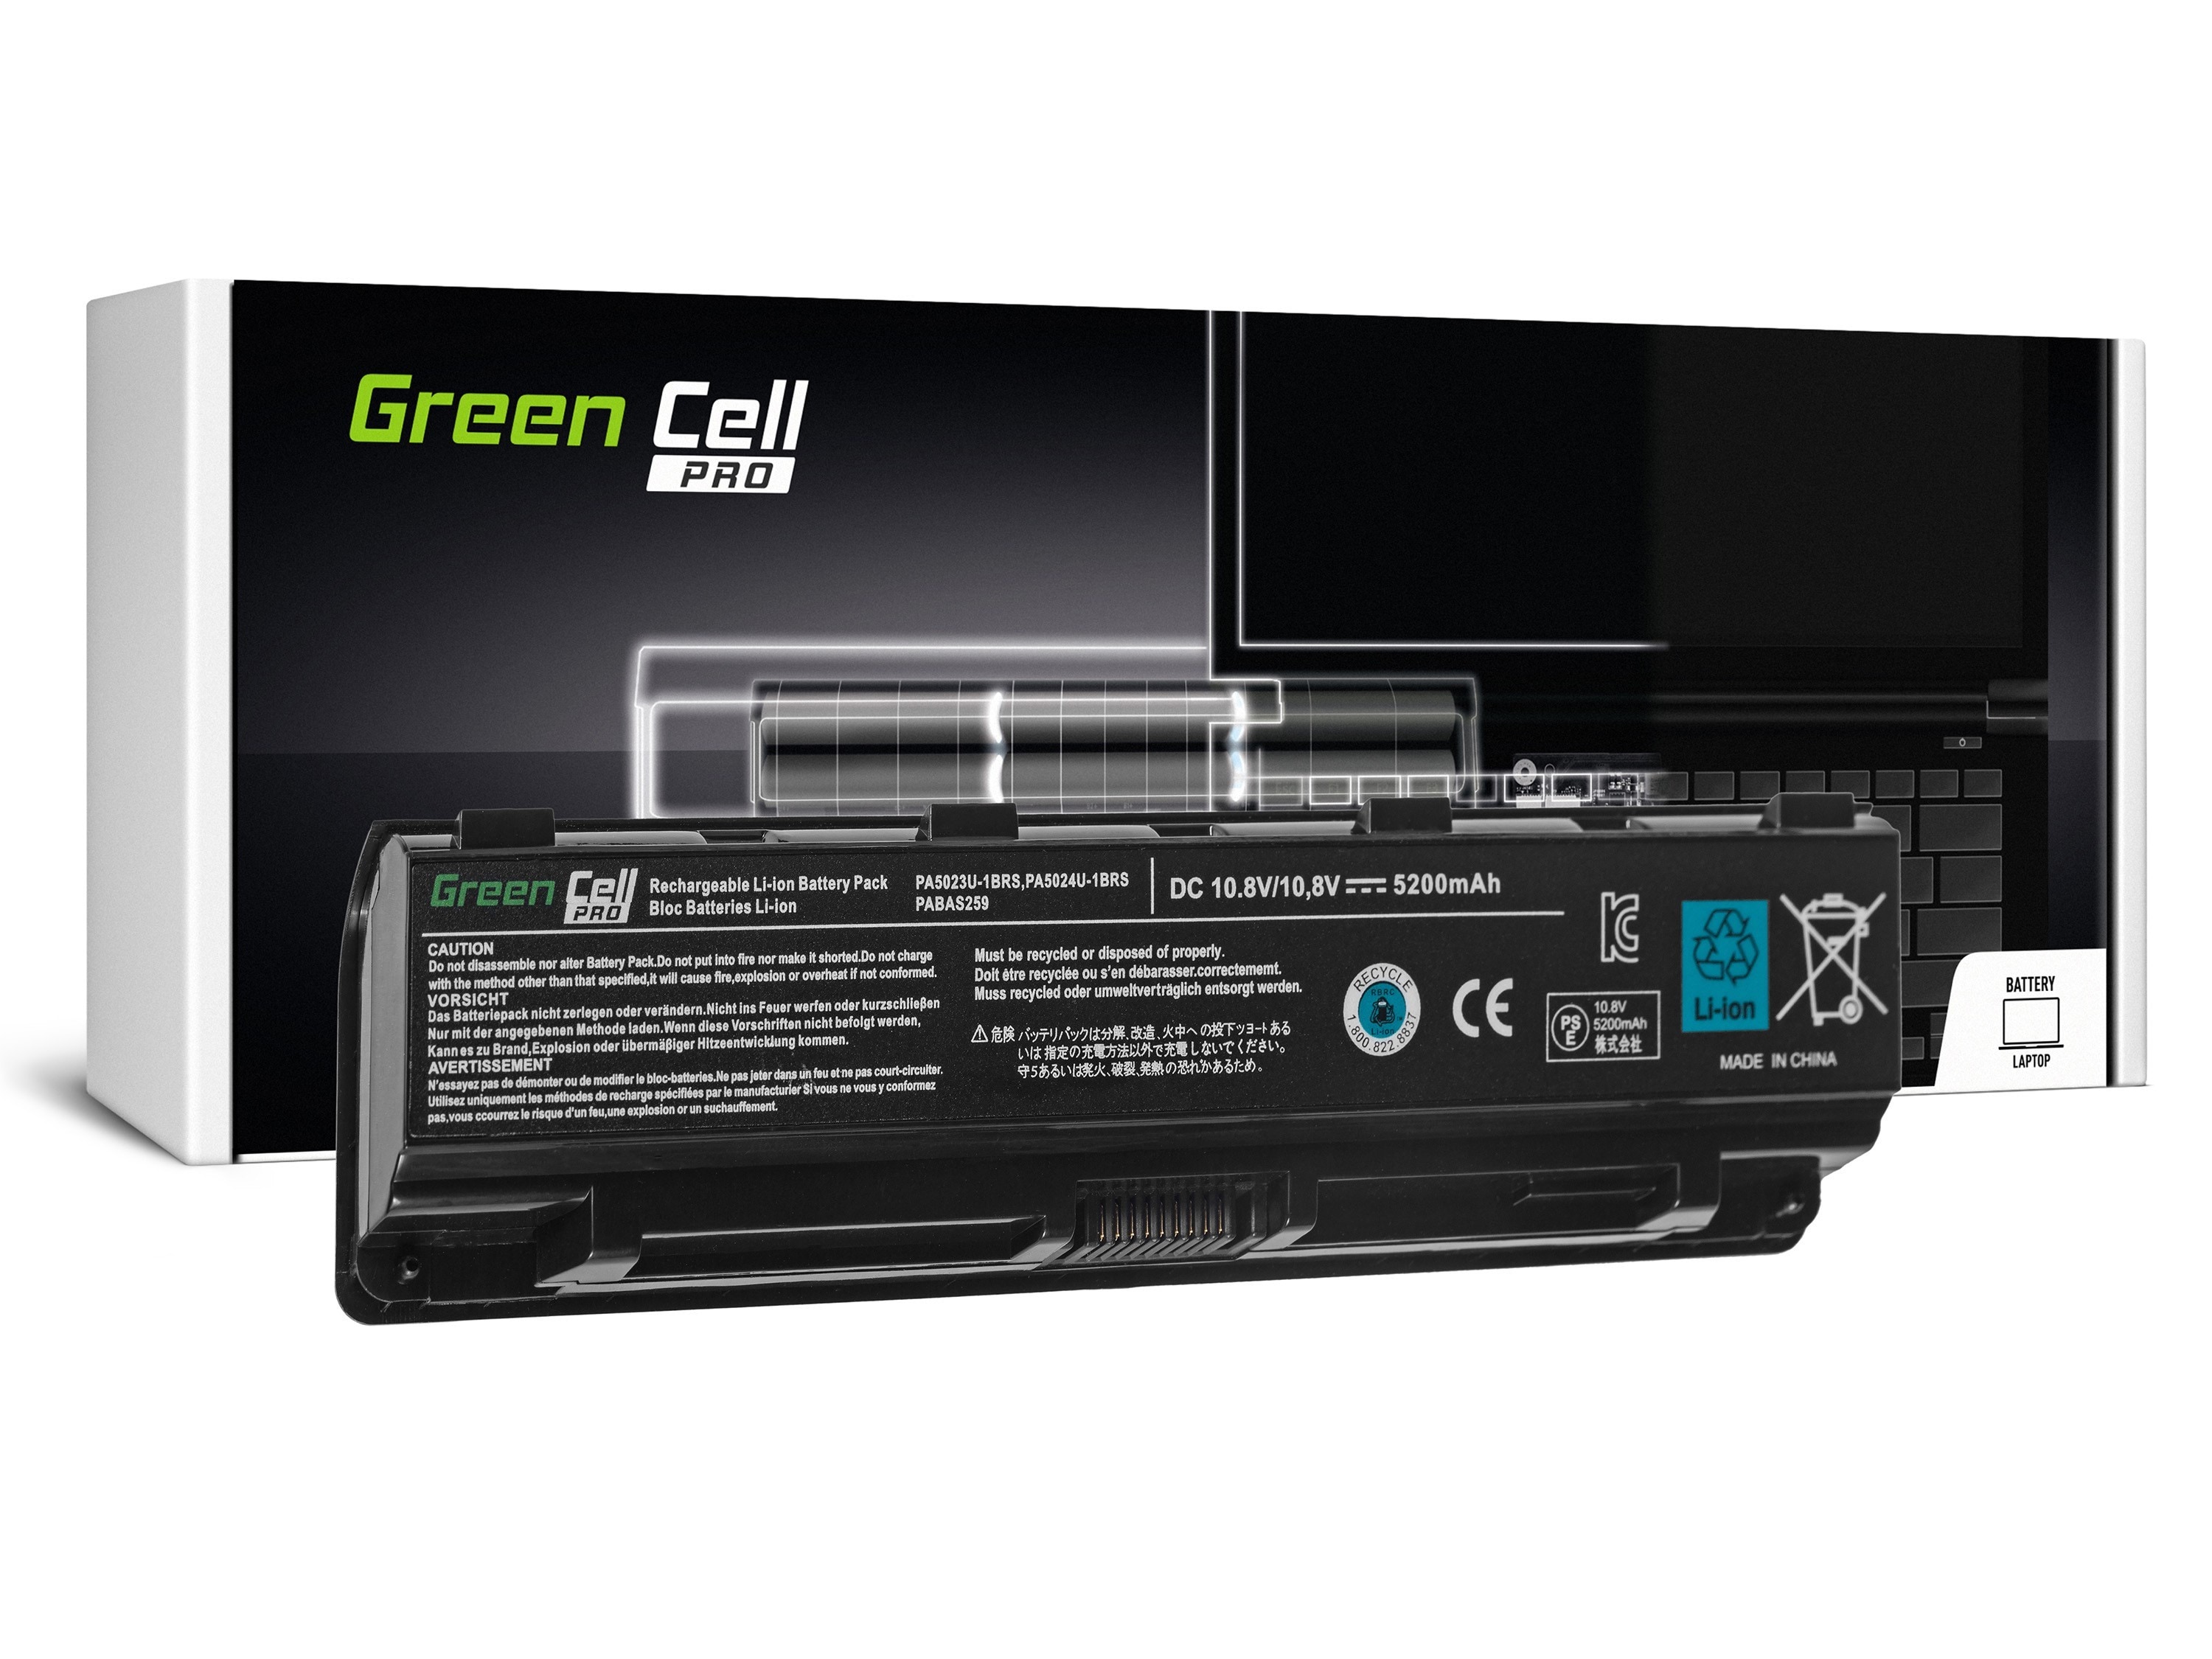 Green Cell PRO laptop batteri till Toshiba Satellite C850 C855 C870 L850